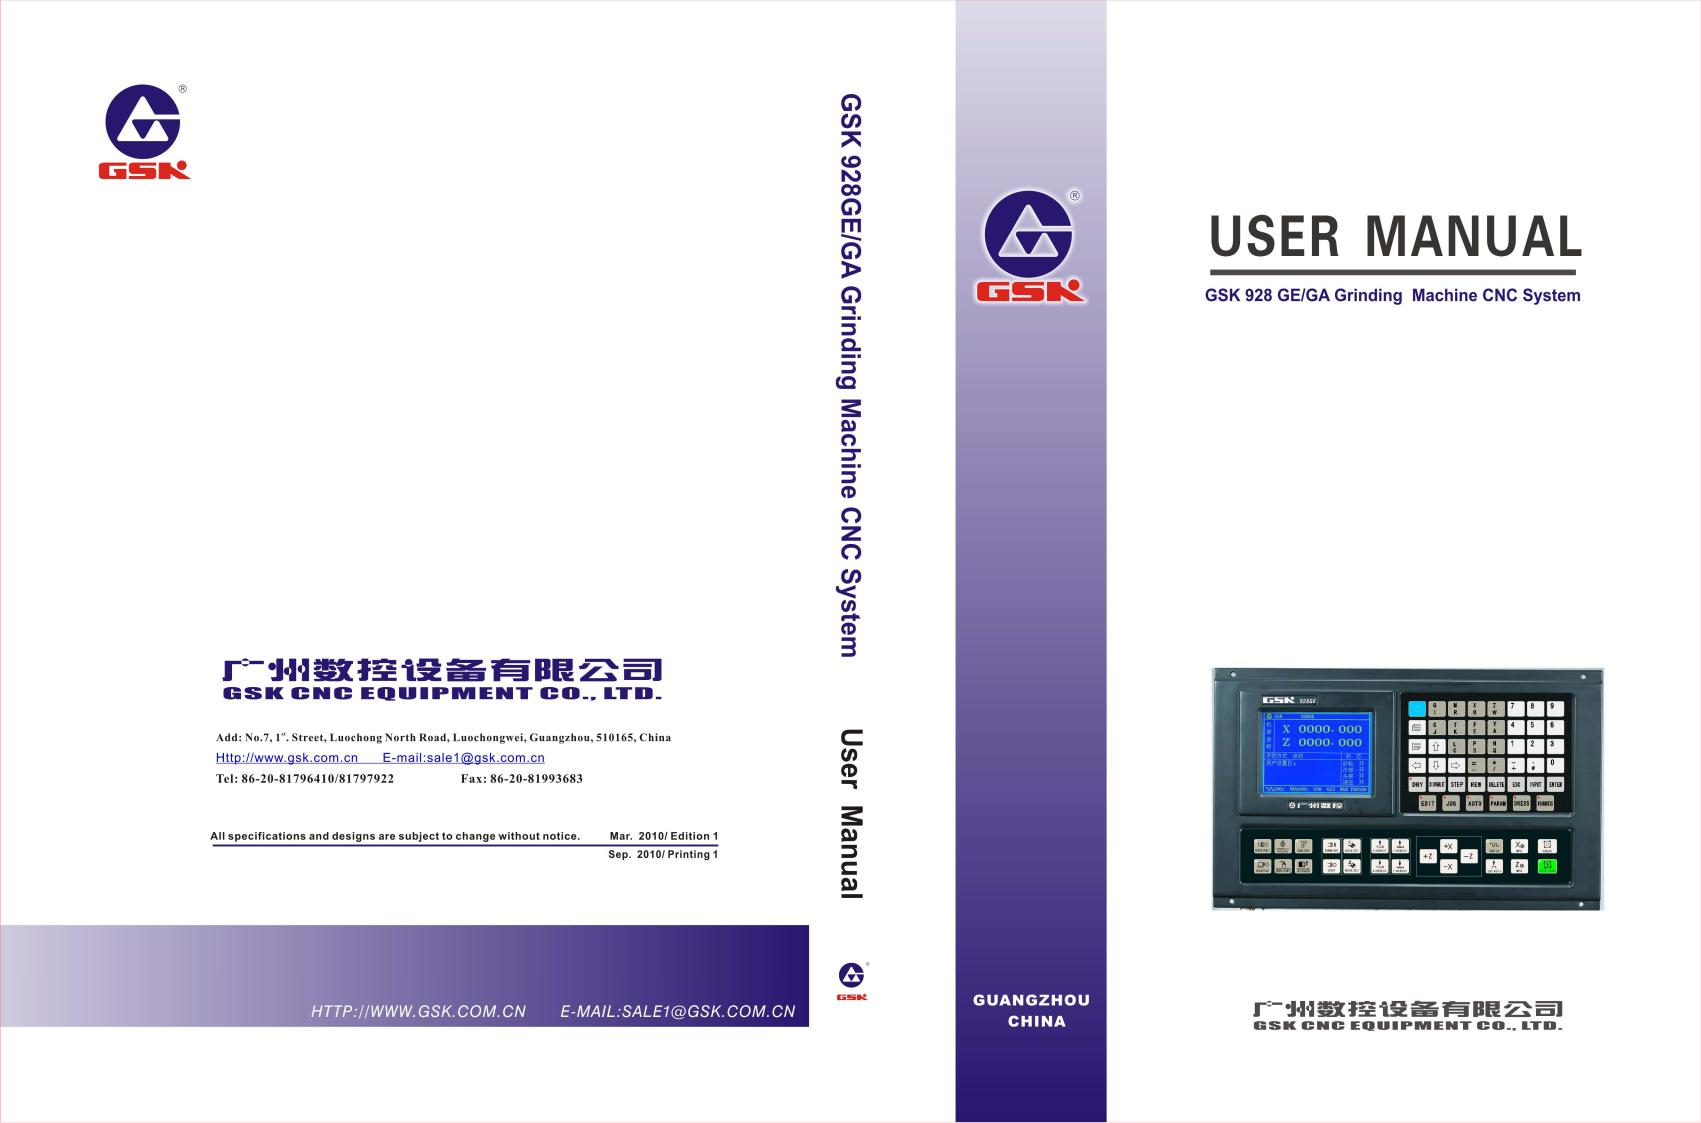 gsk GSK928GA, GSK928GE Operator’s Manual